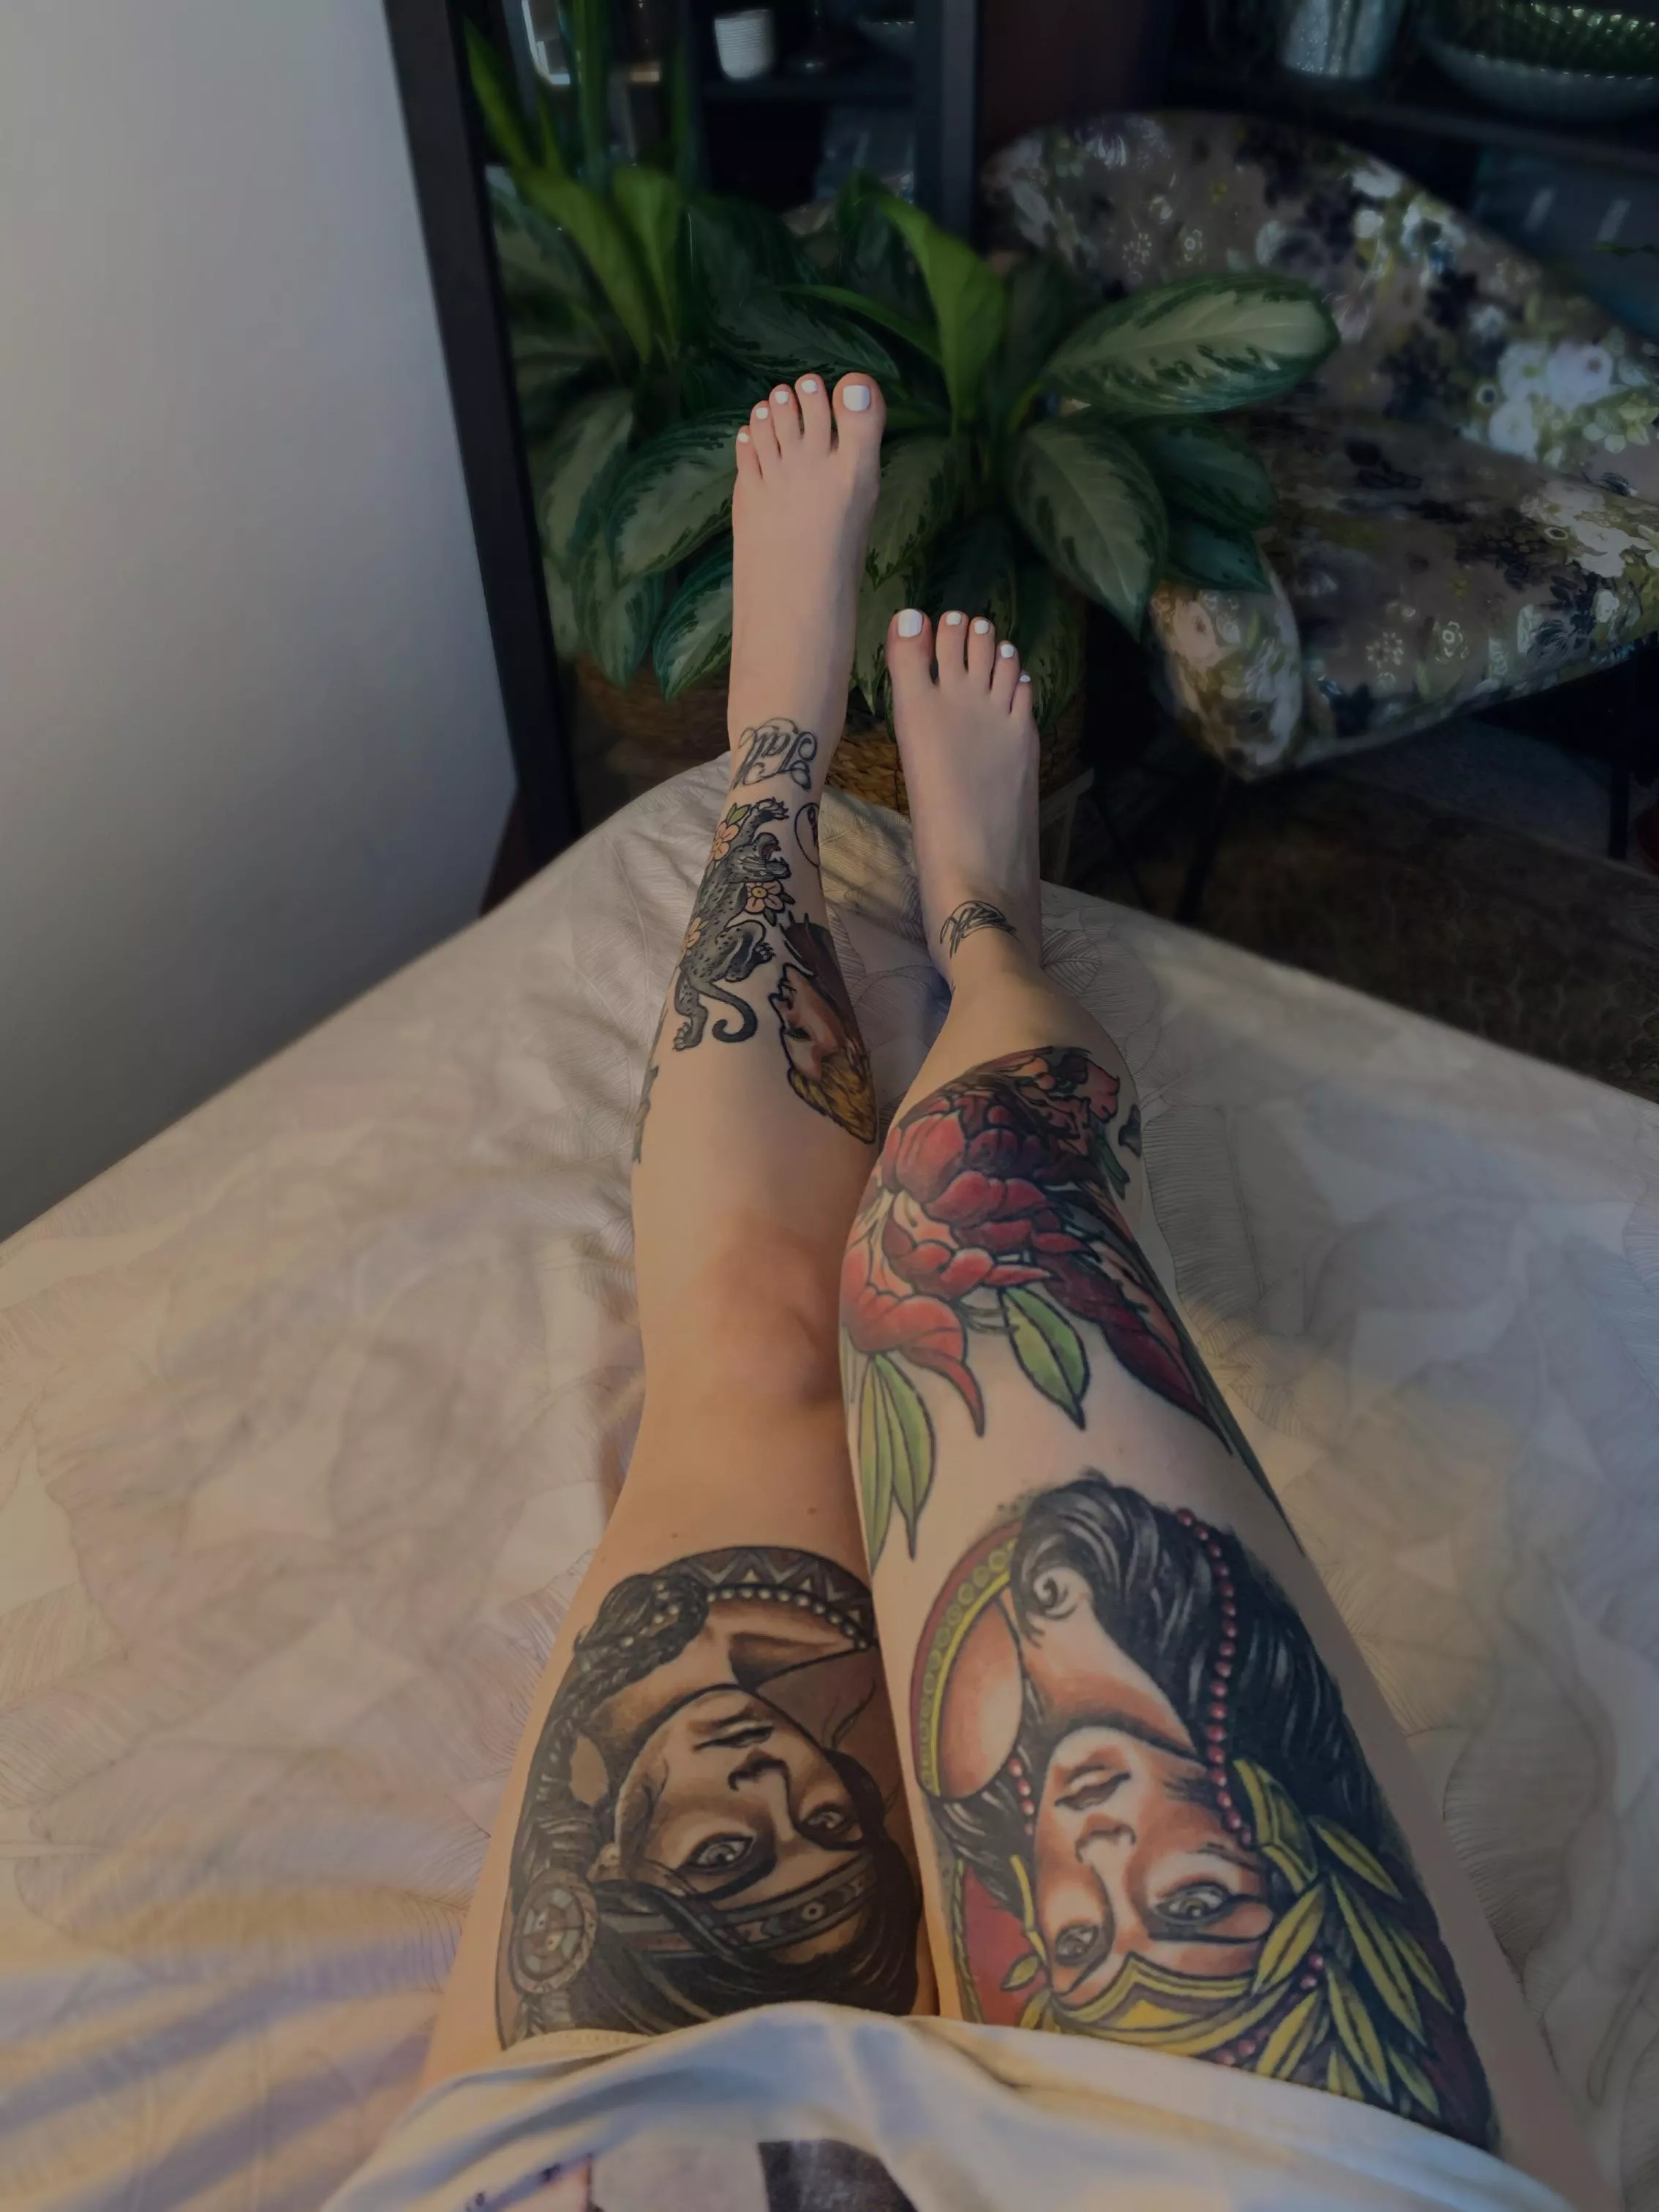 hd porn sexy feet tattoo